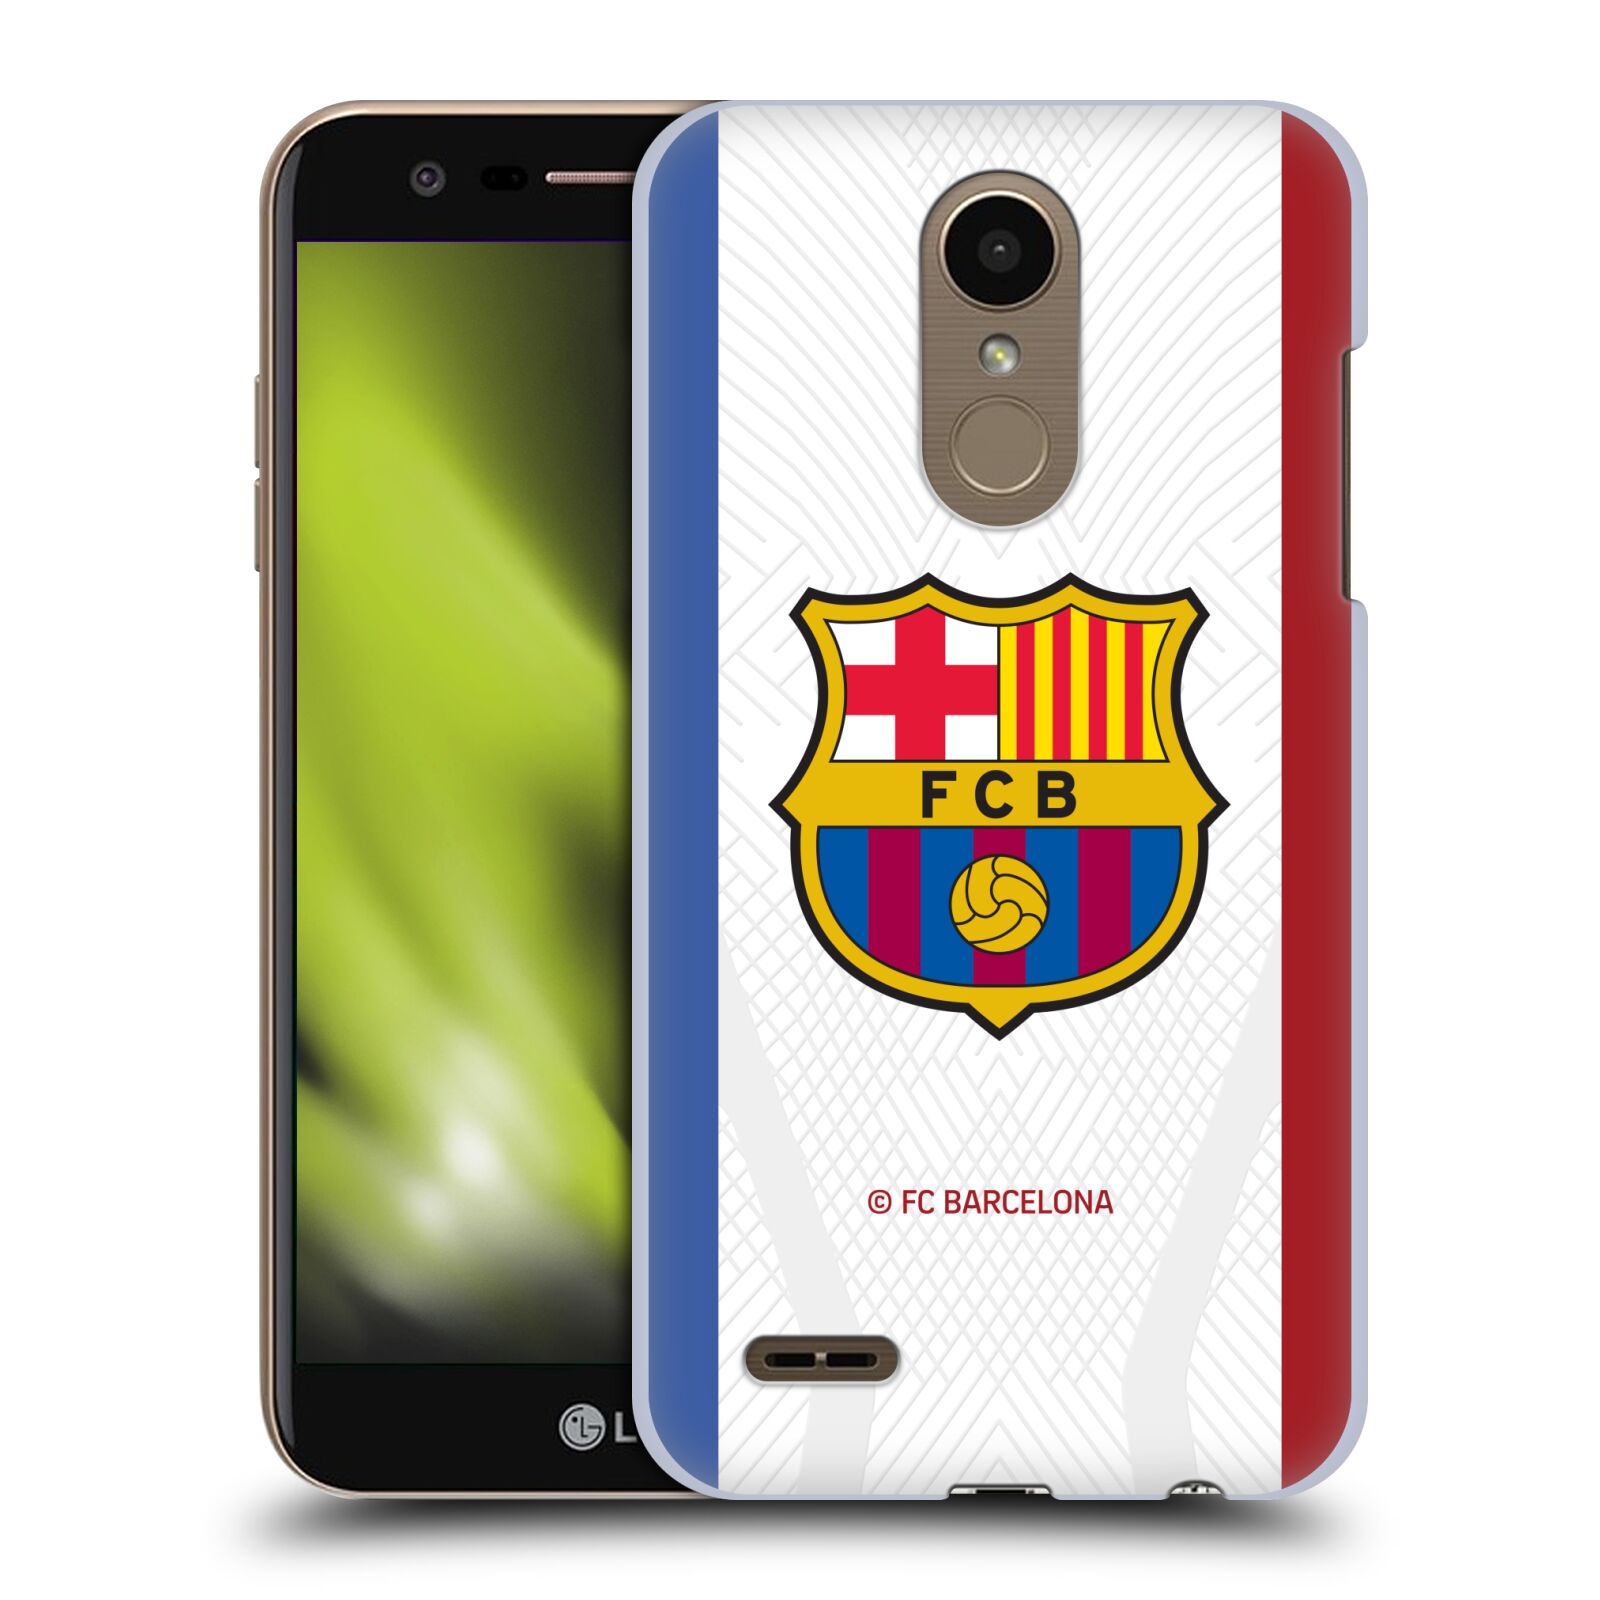 Obal na mobil LG K10 2018 - HEAD CASE - FC BARCELONA - Venkovní dres bílá velký znak